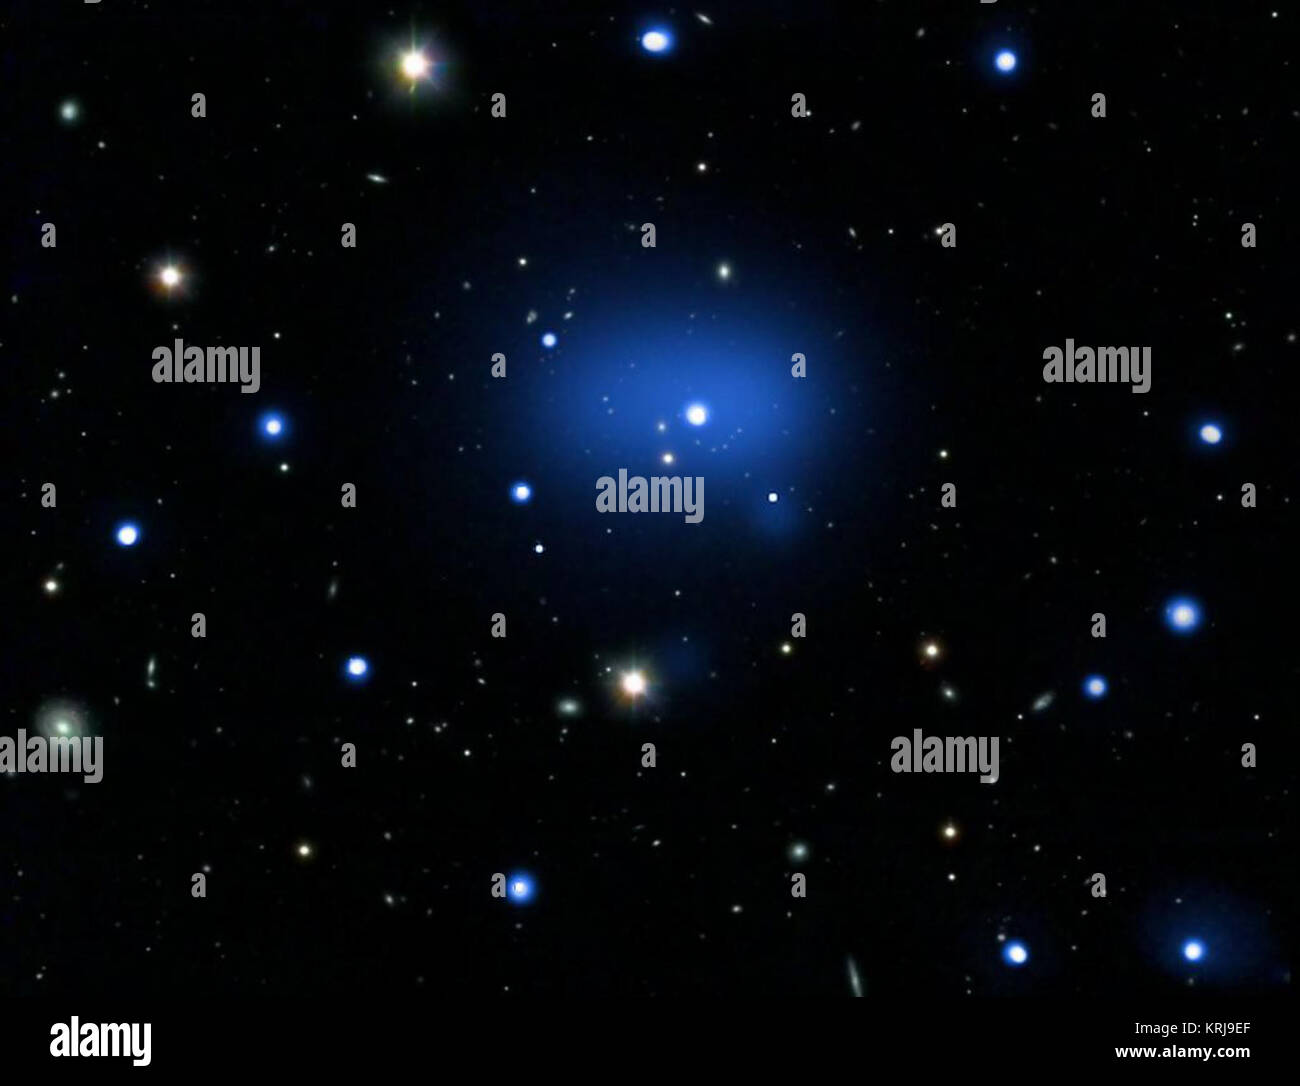 Dies ist ein zusammengesetztes Bild der fernsten Galaxienhaufen nicht erkannt. Dieses Image enthält X-Strahlen, die von der NASA Chandra X-ray Observatory, optische Daten aus dem Very Large Telescope (VLT) und optischen und Infrarot Daten vom Digitized Sky Survey. Diese rekordverdächtige Objekt, als JKCS041 bekannt, wird beobachtet, wie es war, als das Universum nur ein Viertel seiner aktuellen Alter war. Röntgenstrahlen von Chandra sind hier als die diffuse blaue Region angezeigt, während die einzelnen Galaxien im Cluster sind in Weiß in der VLTs optischen Daten, eingebettet in die X-ray Emission. JKCS041 Stockfoto